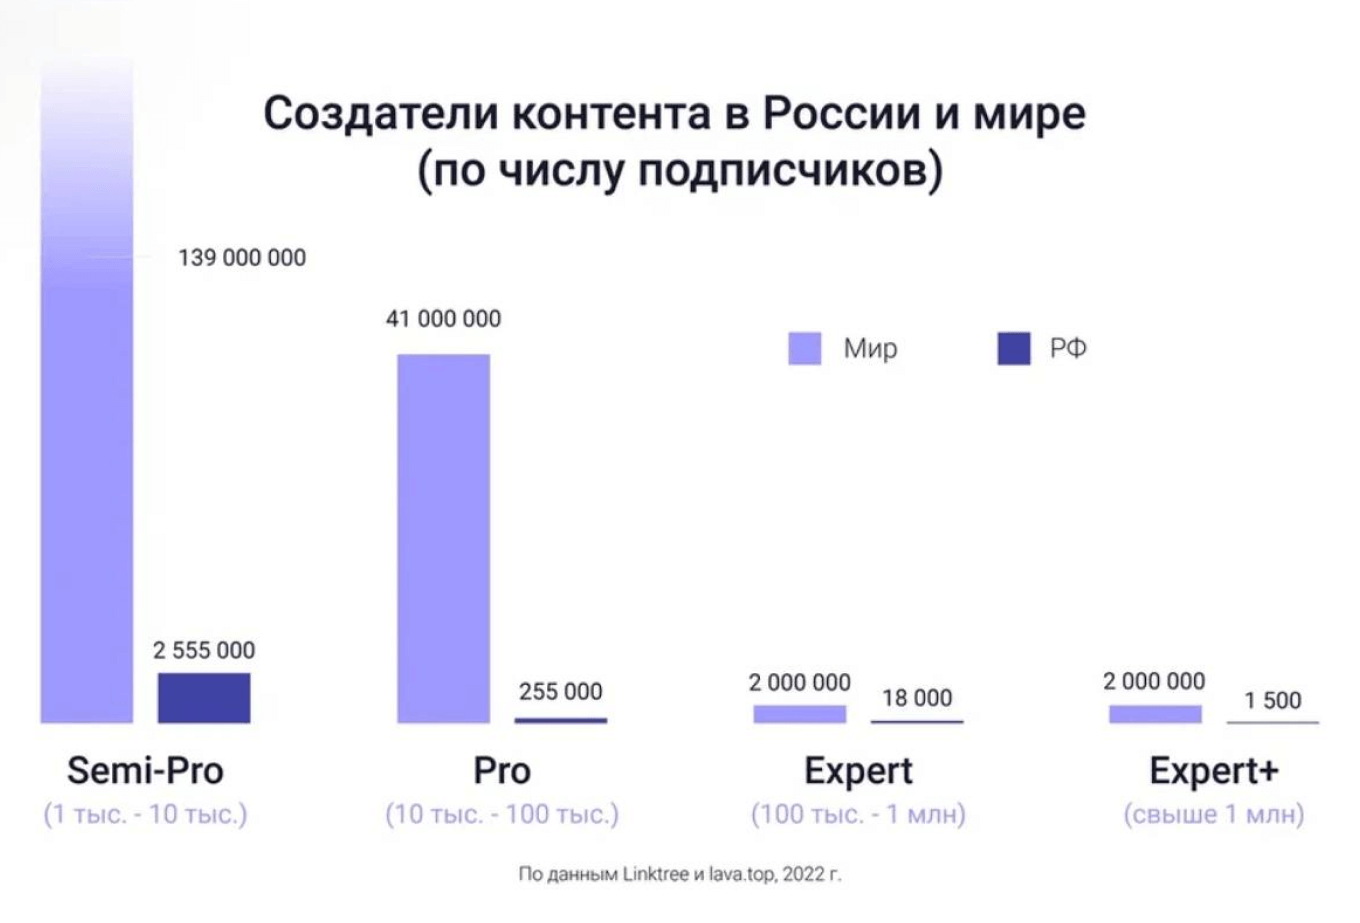 Количество создателей контента в России и в мире